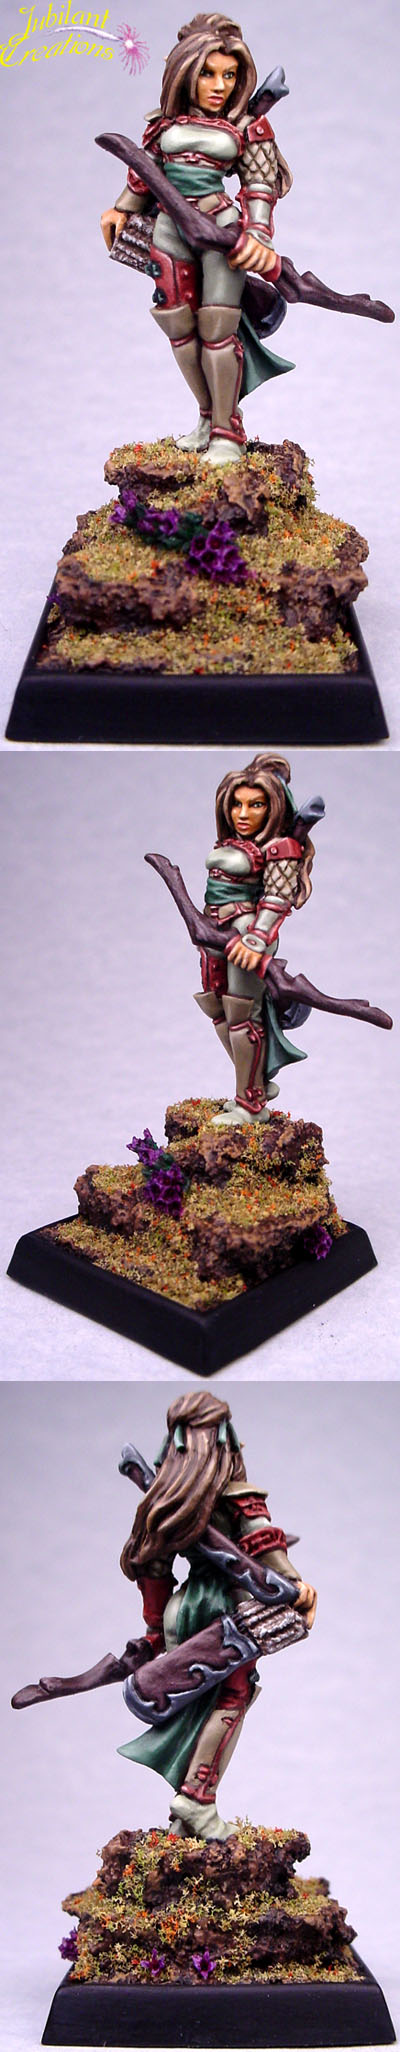 Image of Caerwynn, Elf Archer By Jubilee